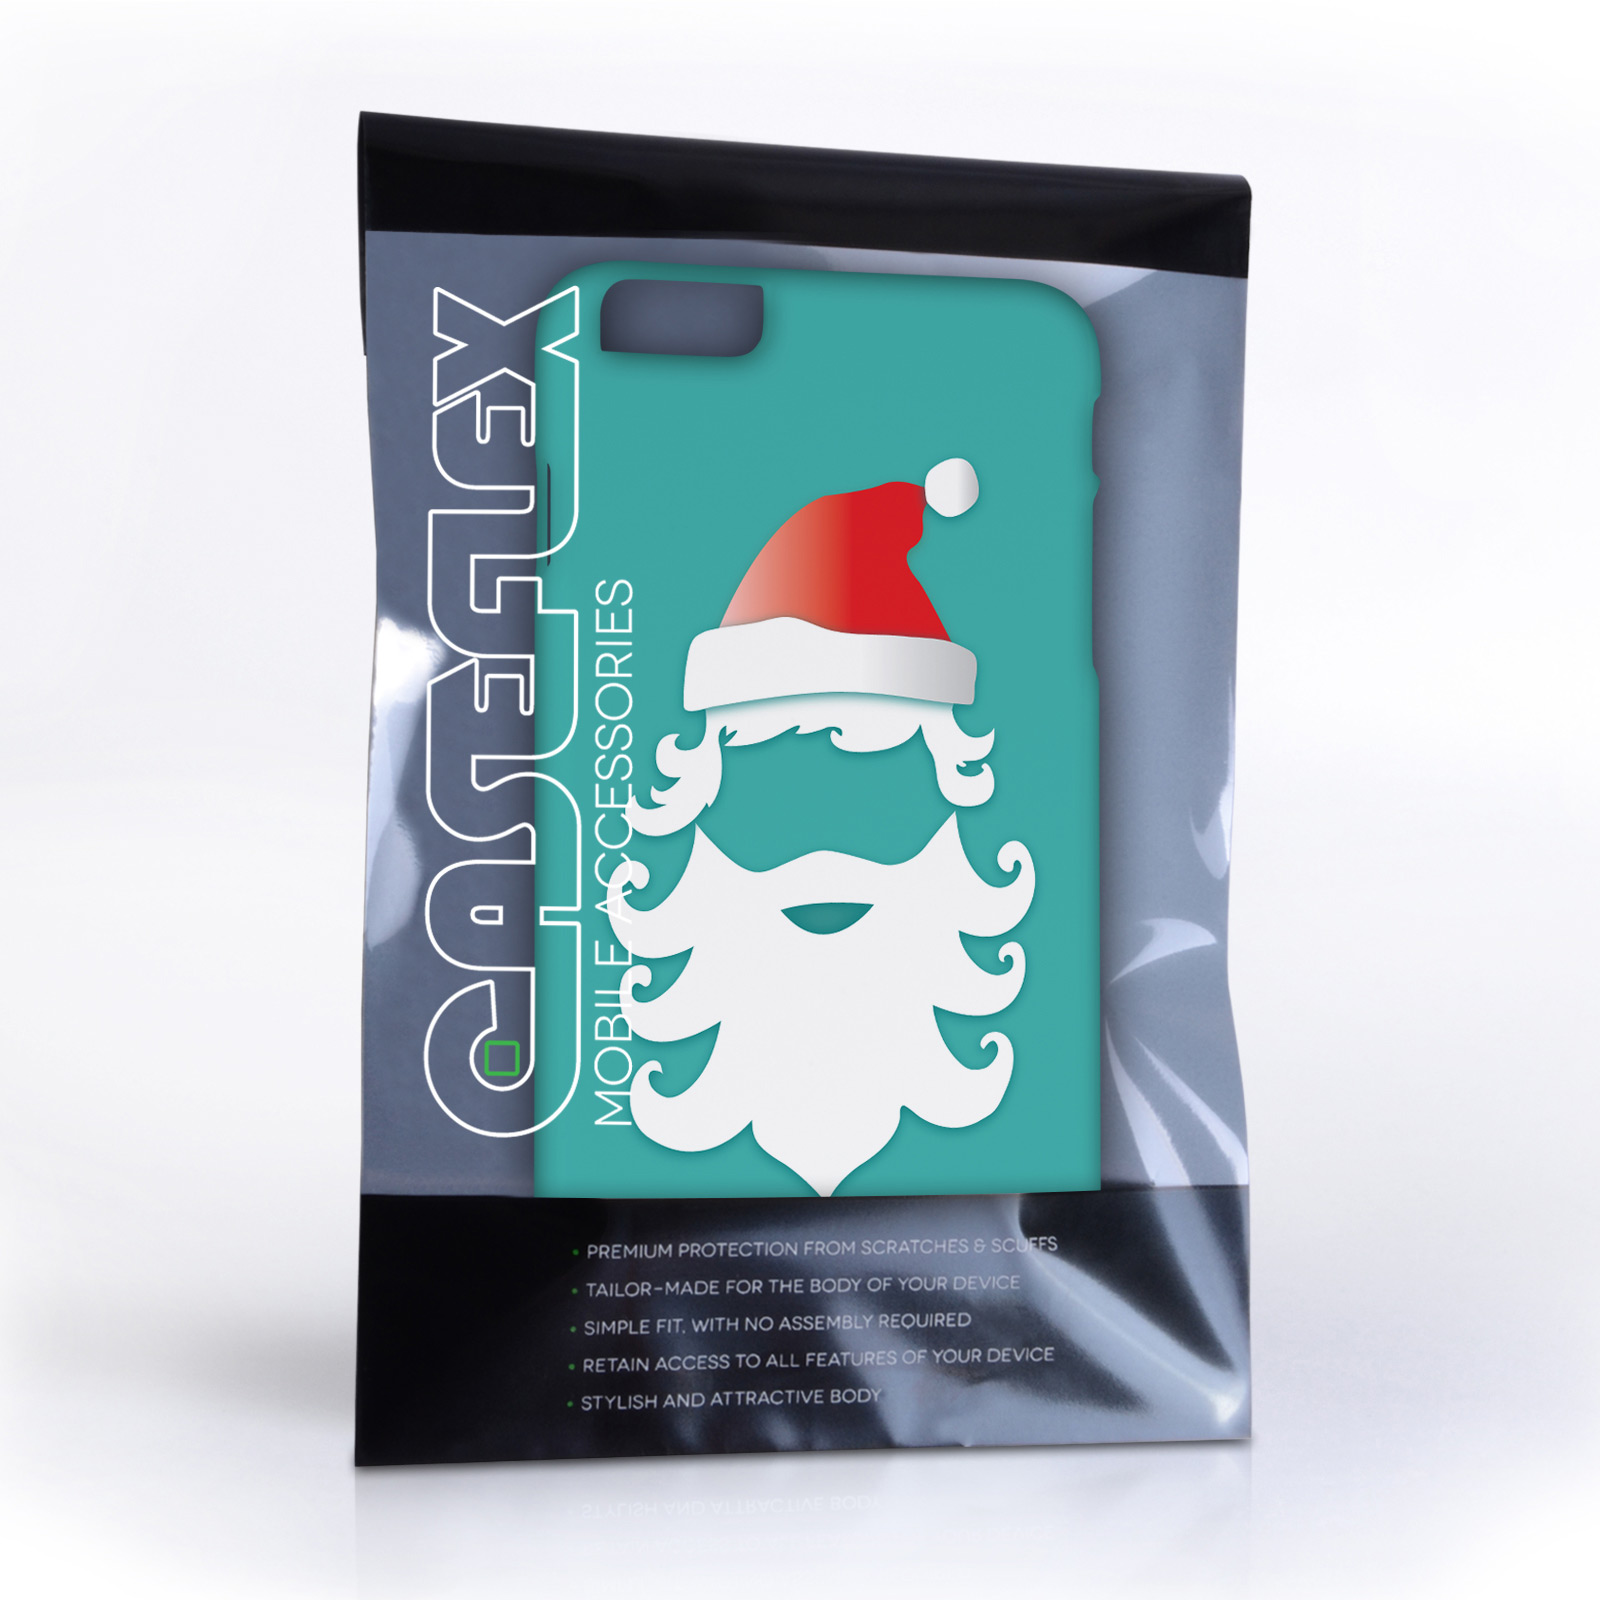 Caseflex iPhone 6 Plus and 6s Plus Christmas Santa Claus Hard Case